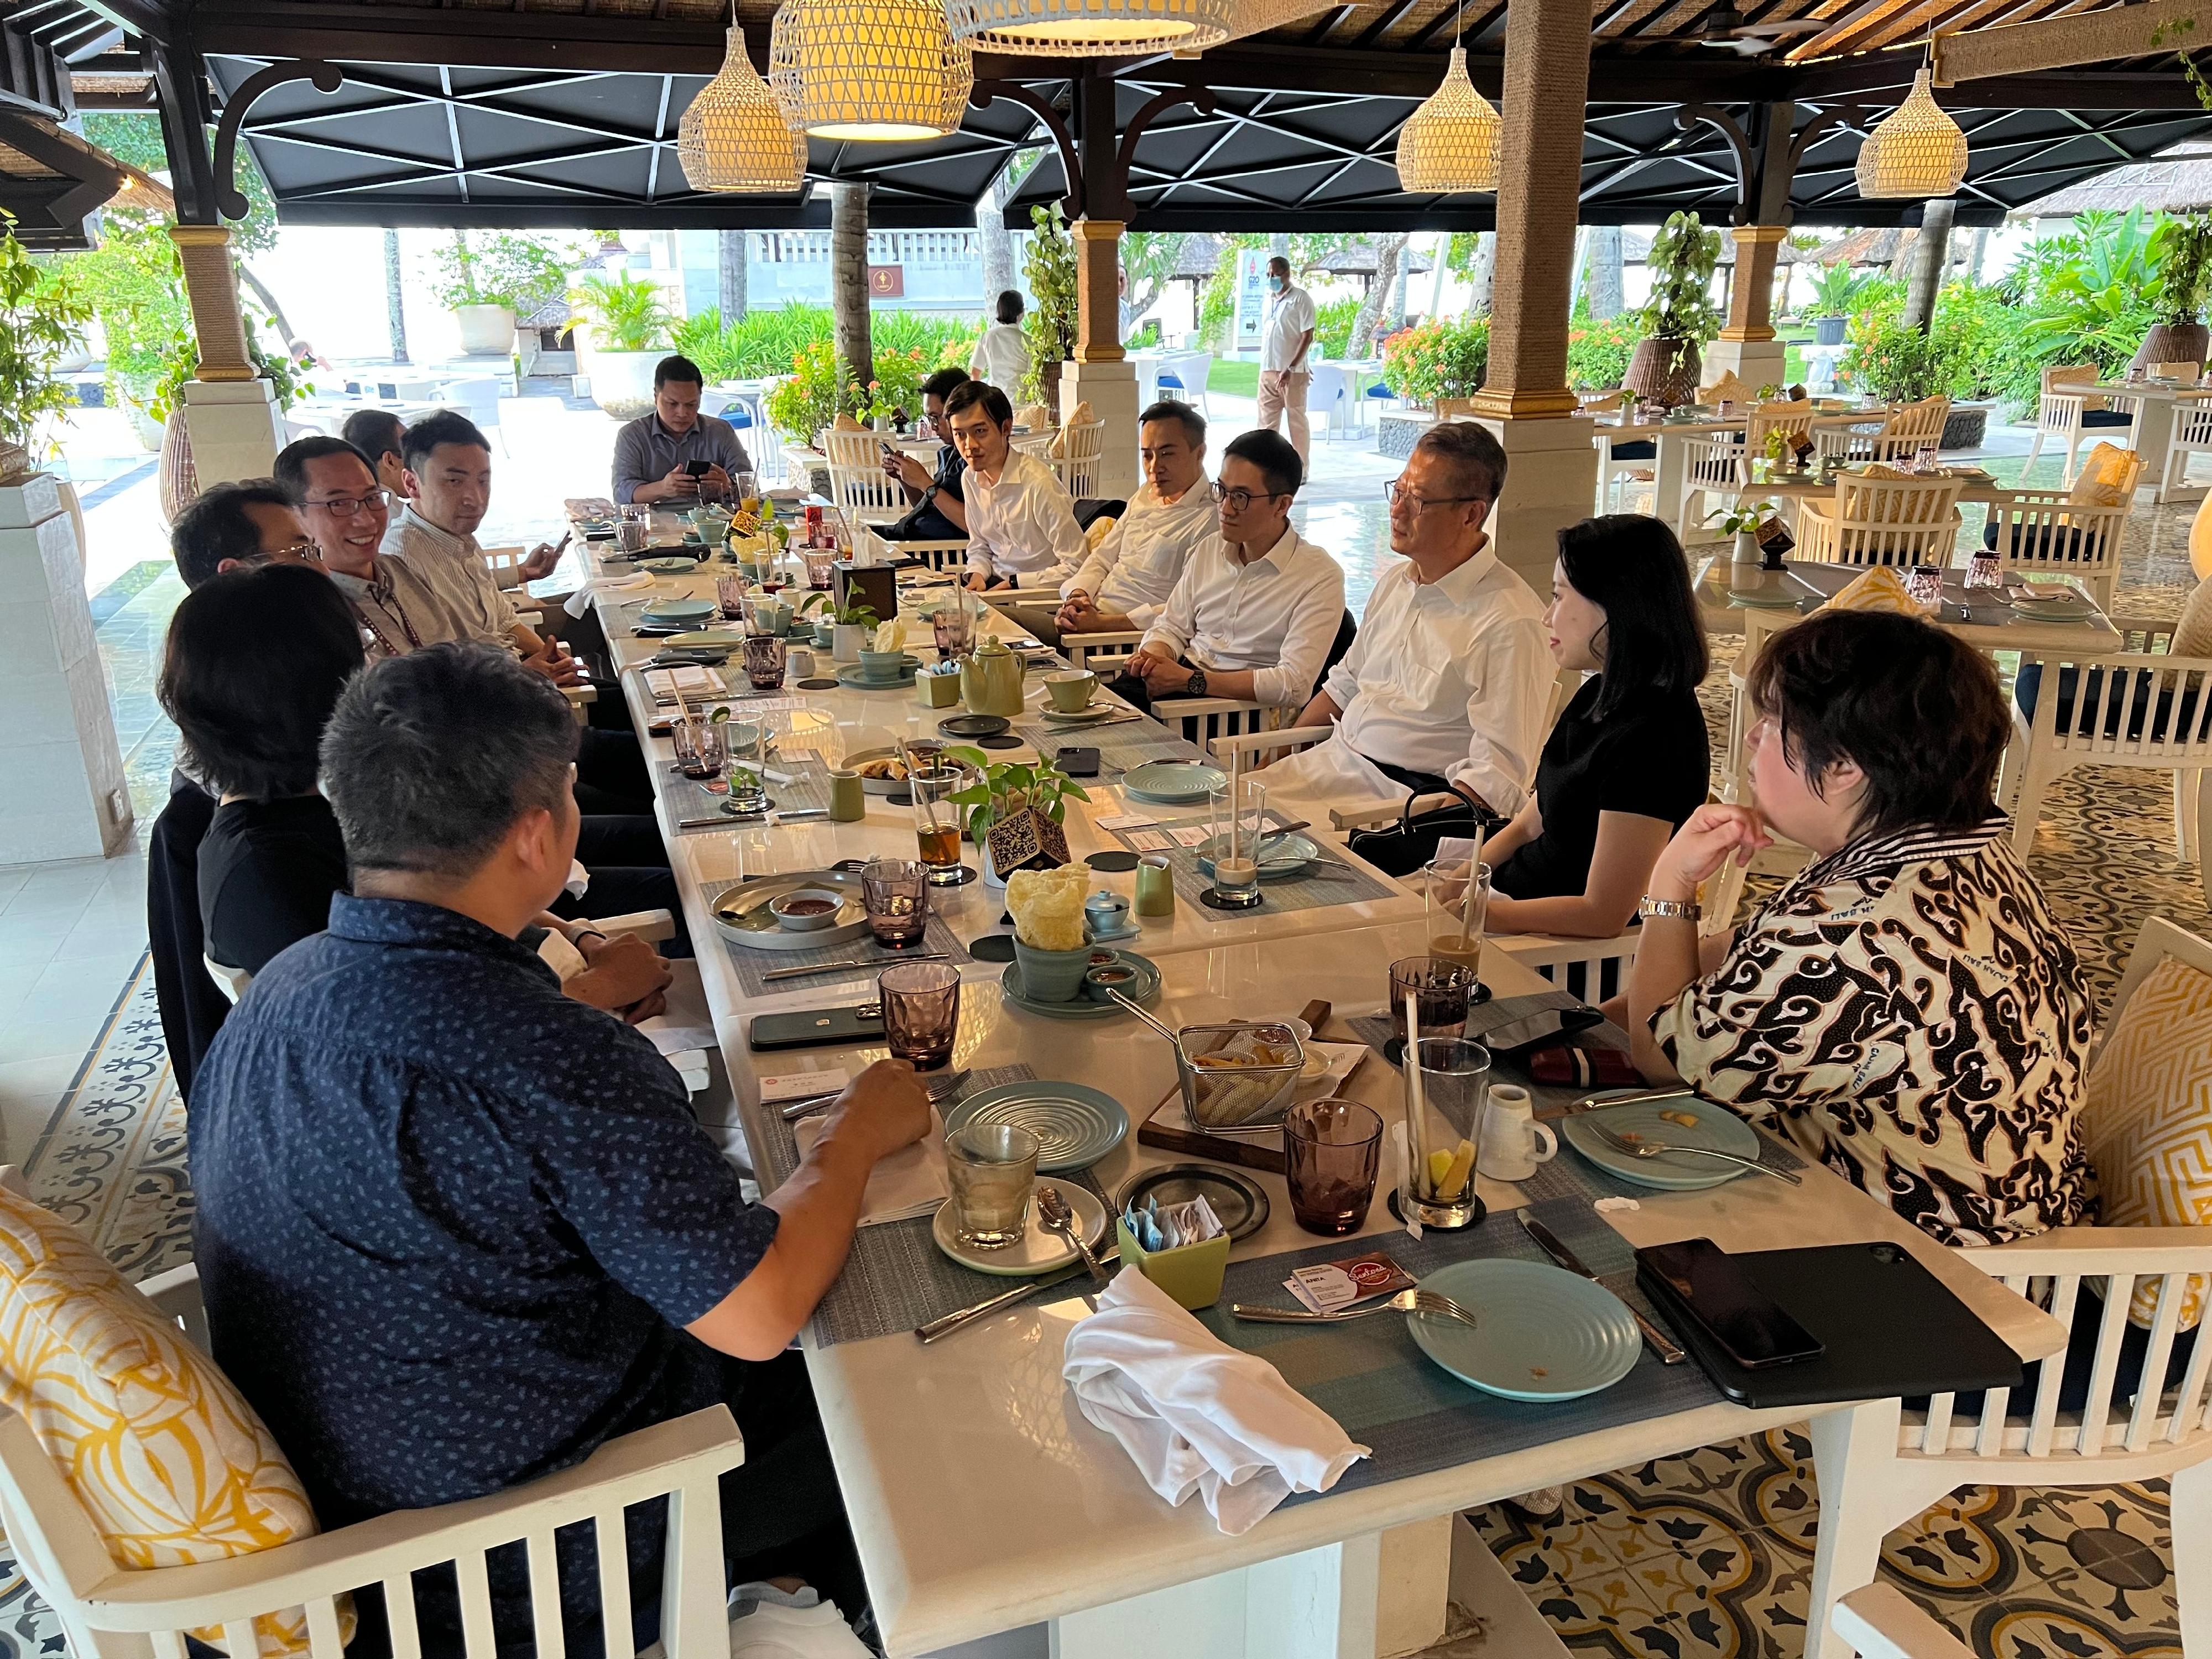 財政司司長陳茂波今日（十一月十四日）抵達印尼巴厘島展開訪問。圖示陳茂波（右三）與在巴厘島的港人茶聚，了解他們的營商和生活情況。